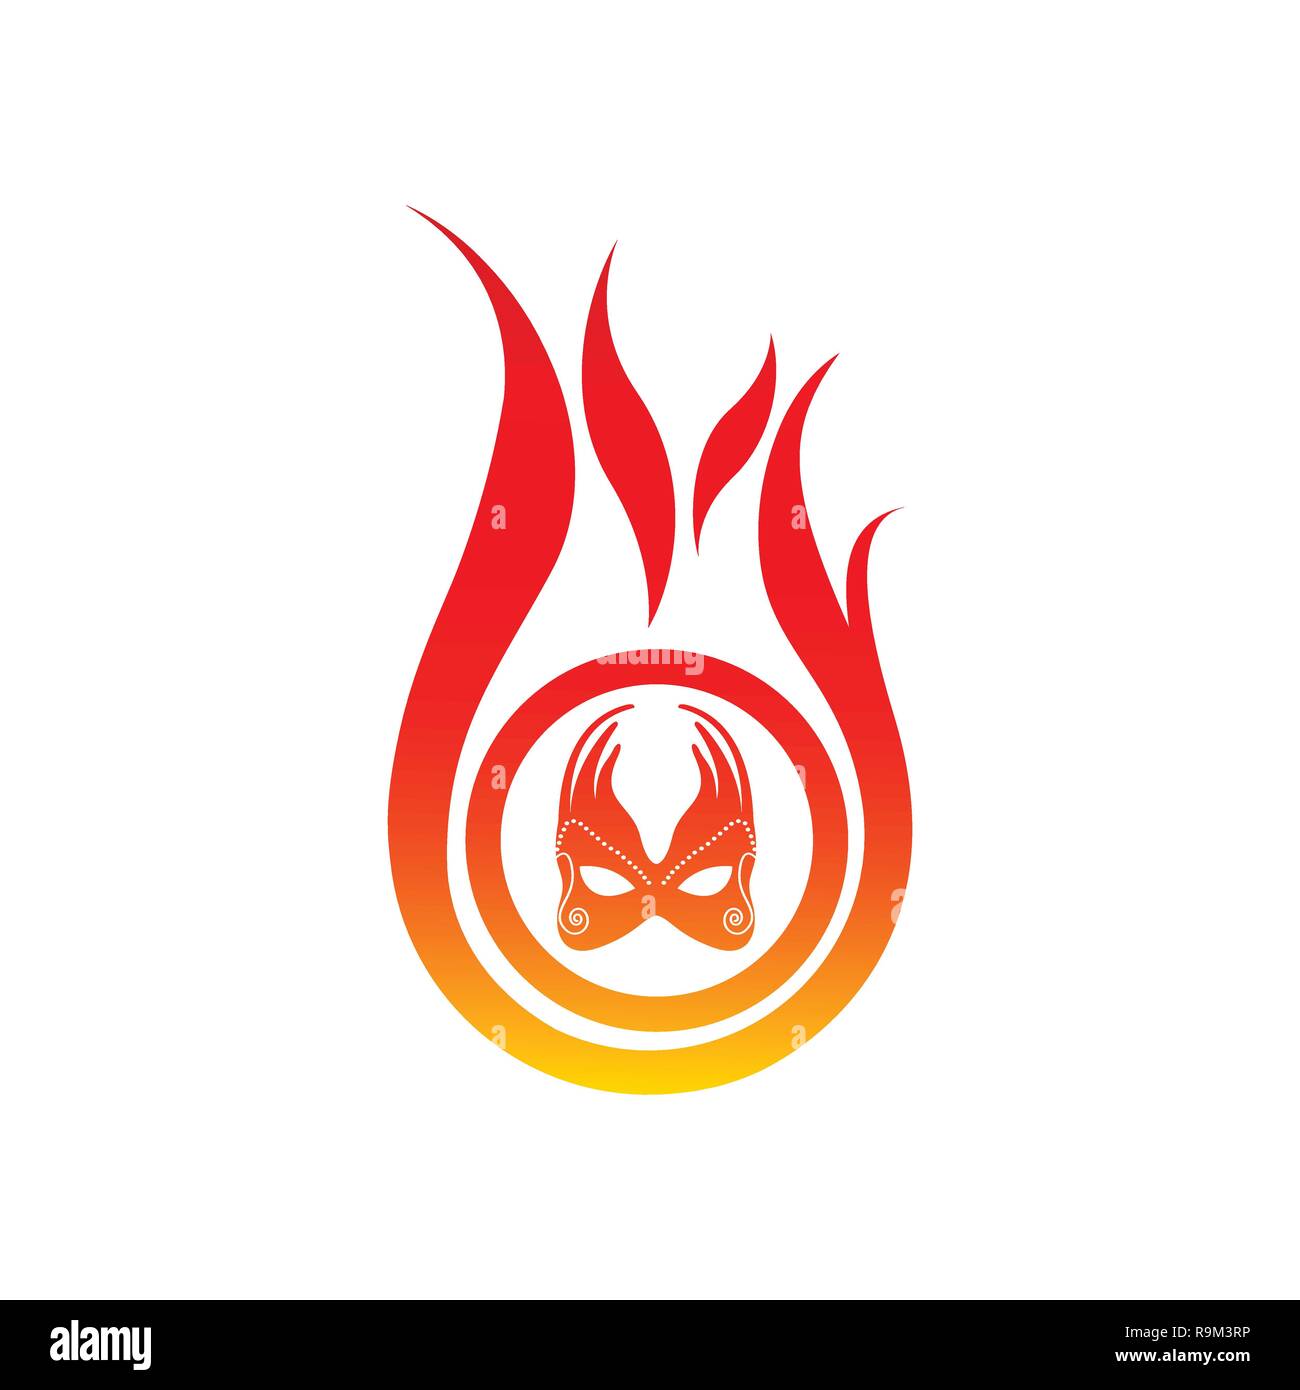 Flamme logo Vektor Vorlage. Brand Logo Design Grafik. torch Logo Design Element. heißes Feuer Symbol. Gas logo Illustration. Symbol entzünden. Wärme unterzeichnen. Ener Stock Vektor